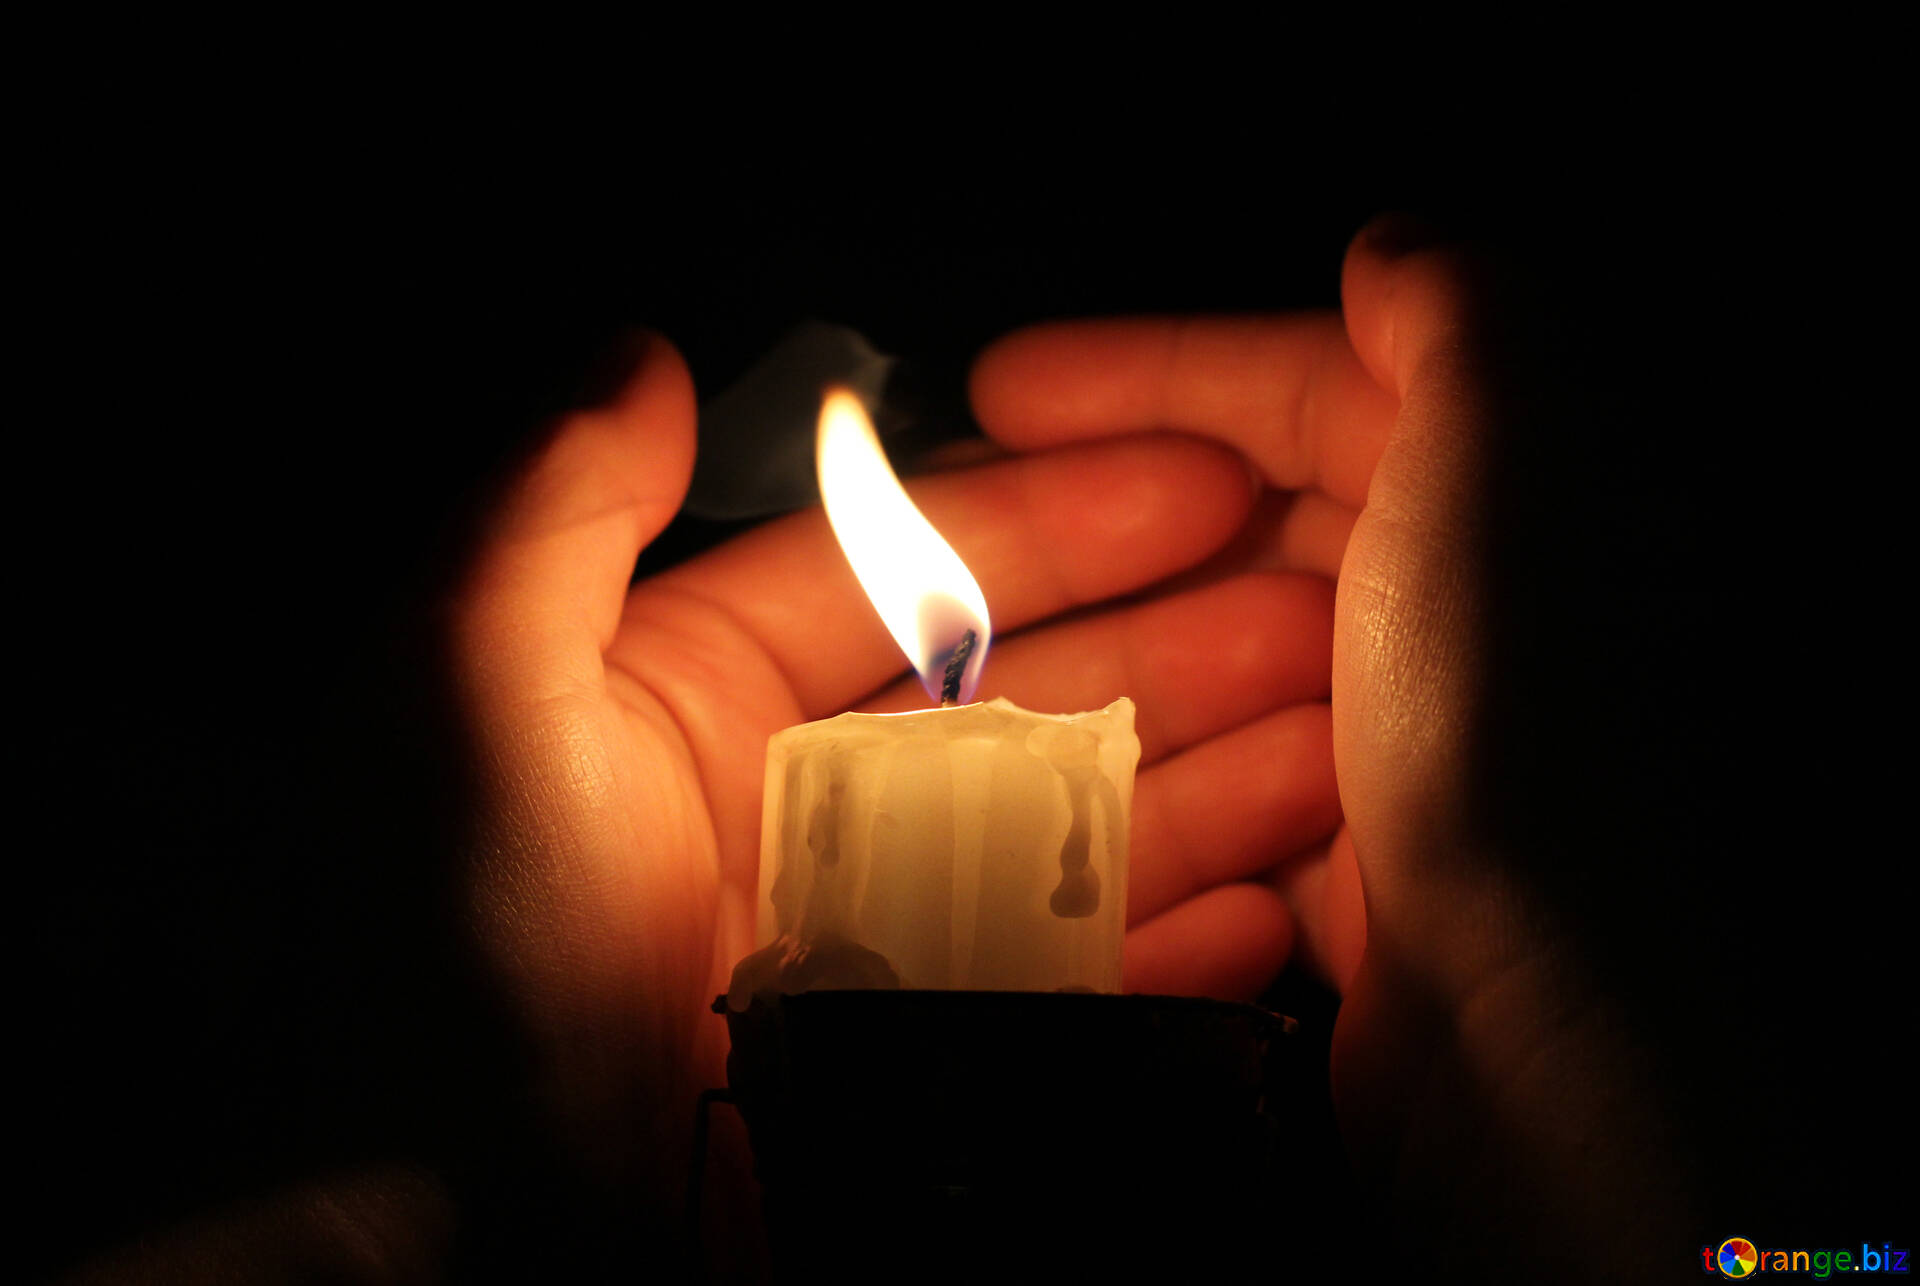 Горящая свеча гаснет в закрытой. Зажженная свеча. Свеча в руках. Горящие свечи. Изображение свечи.